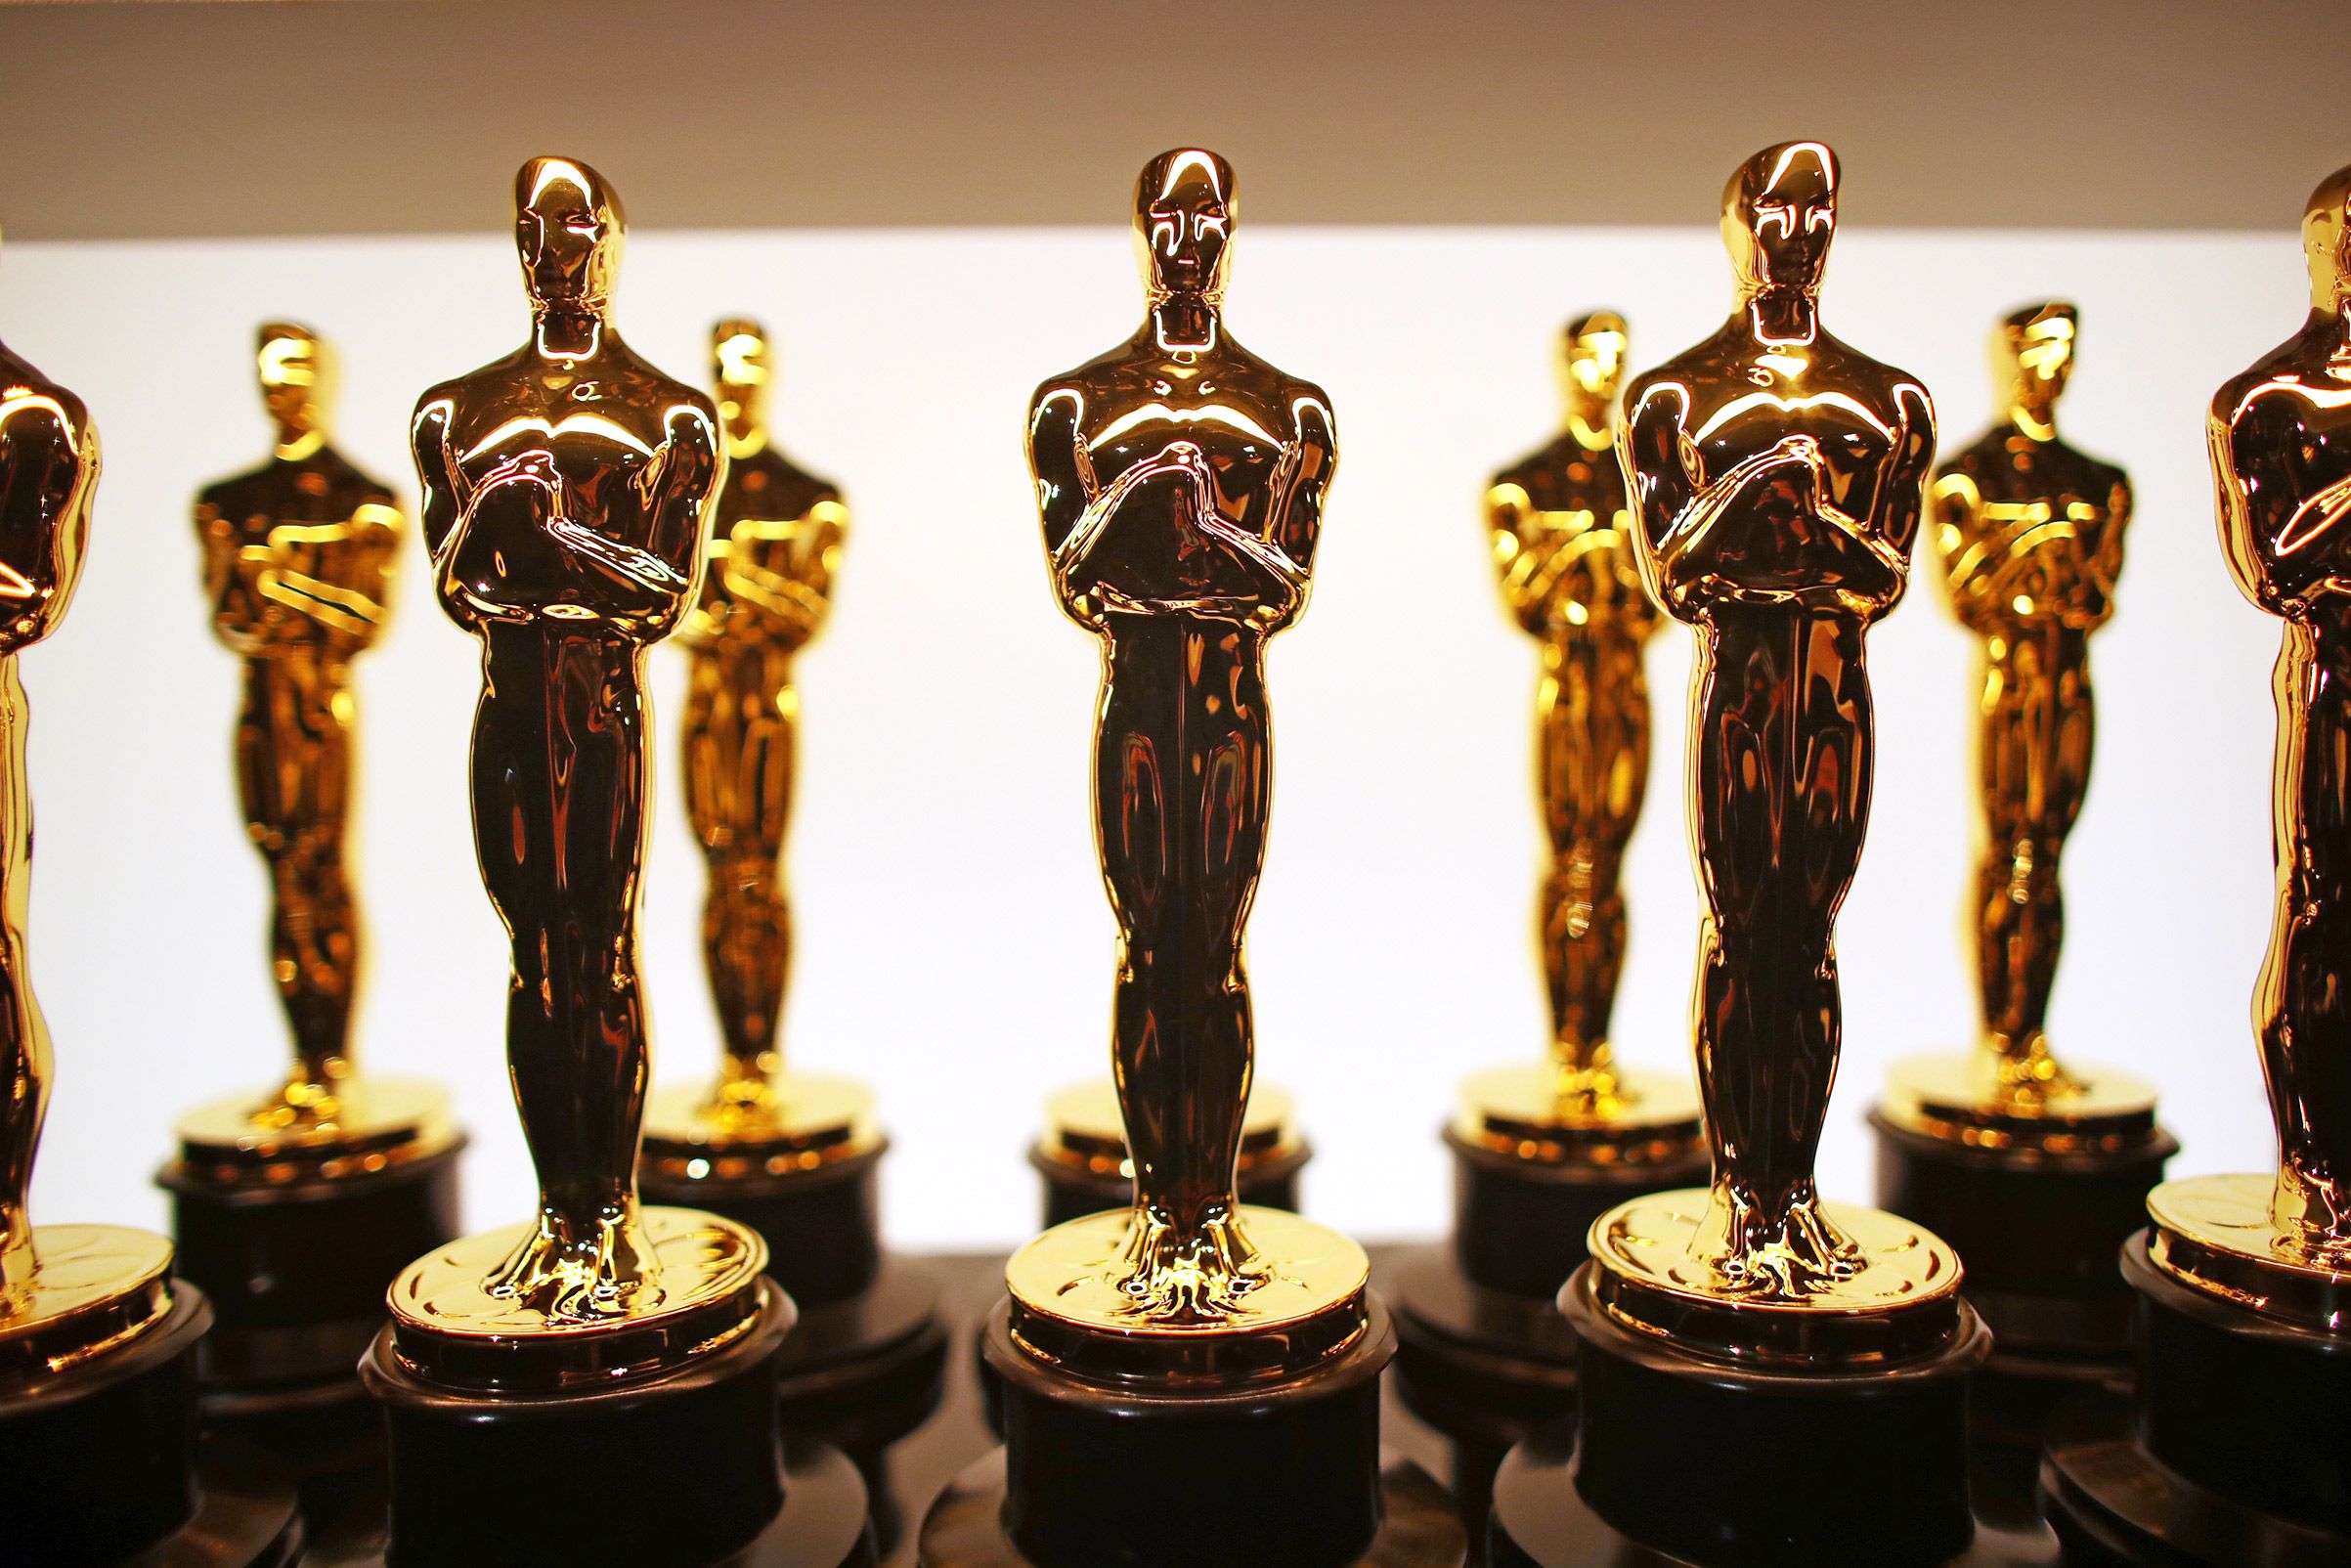 Academia anuncia que a partir do Oscar 2022 categoria de Melhor Filme terá número fixo de 10 indicados